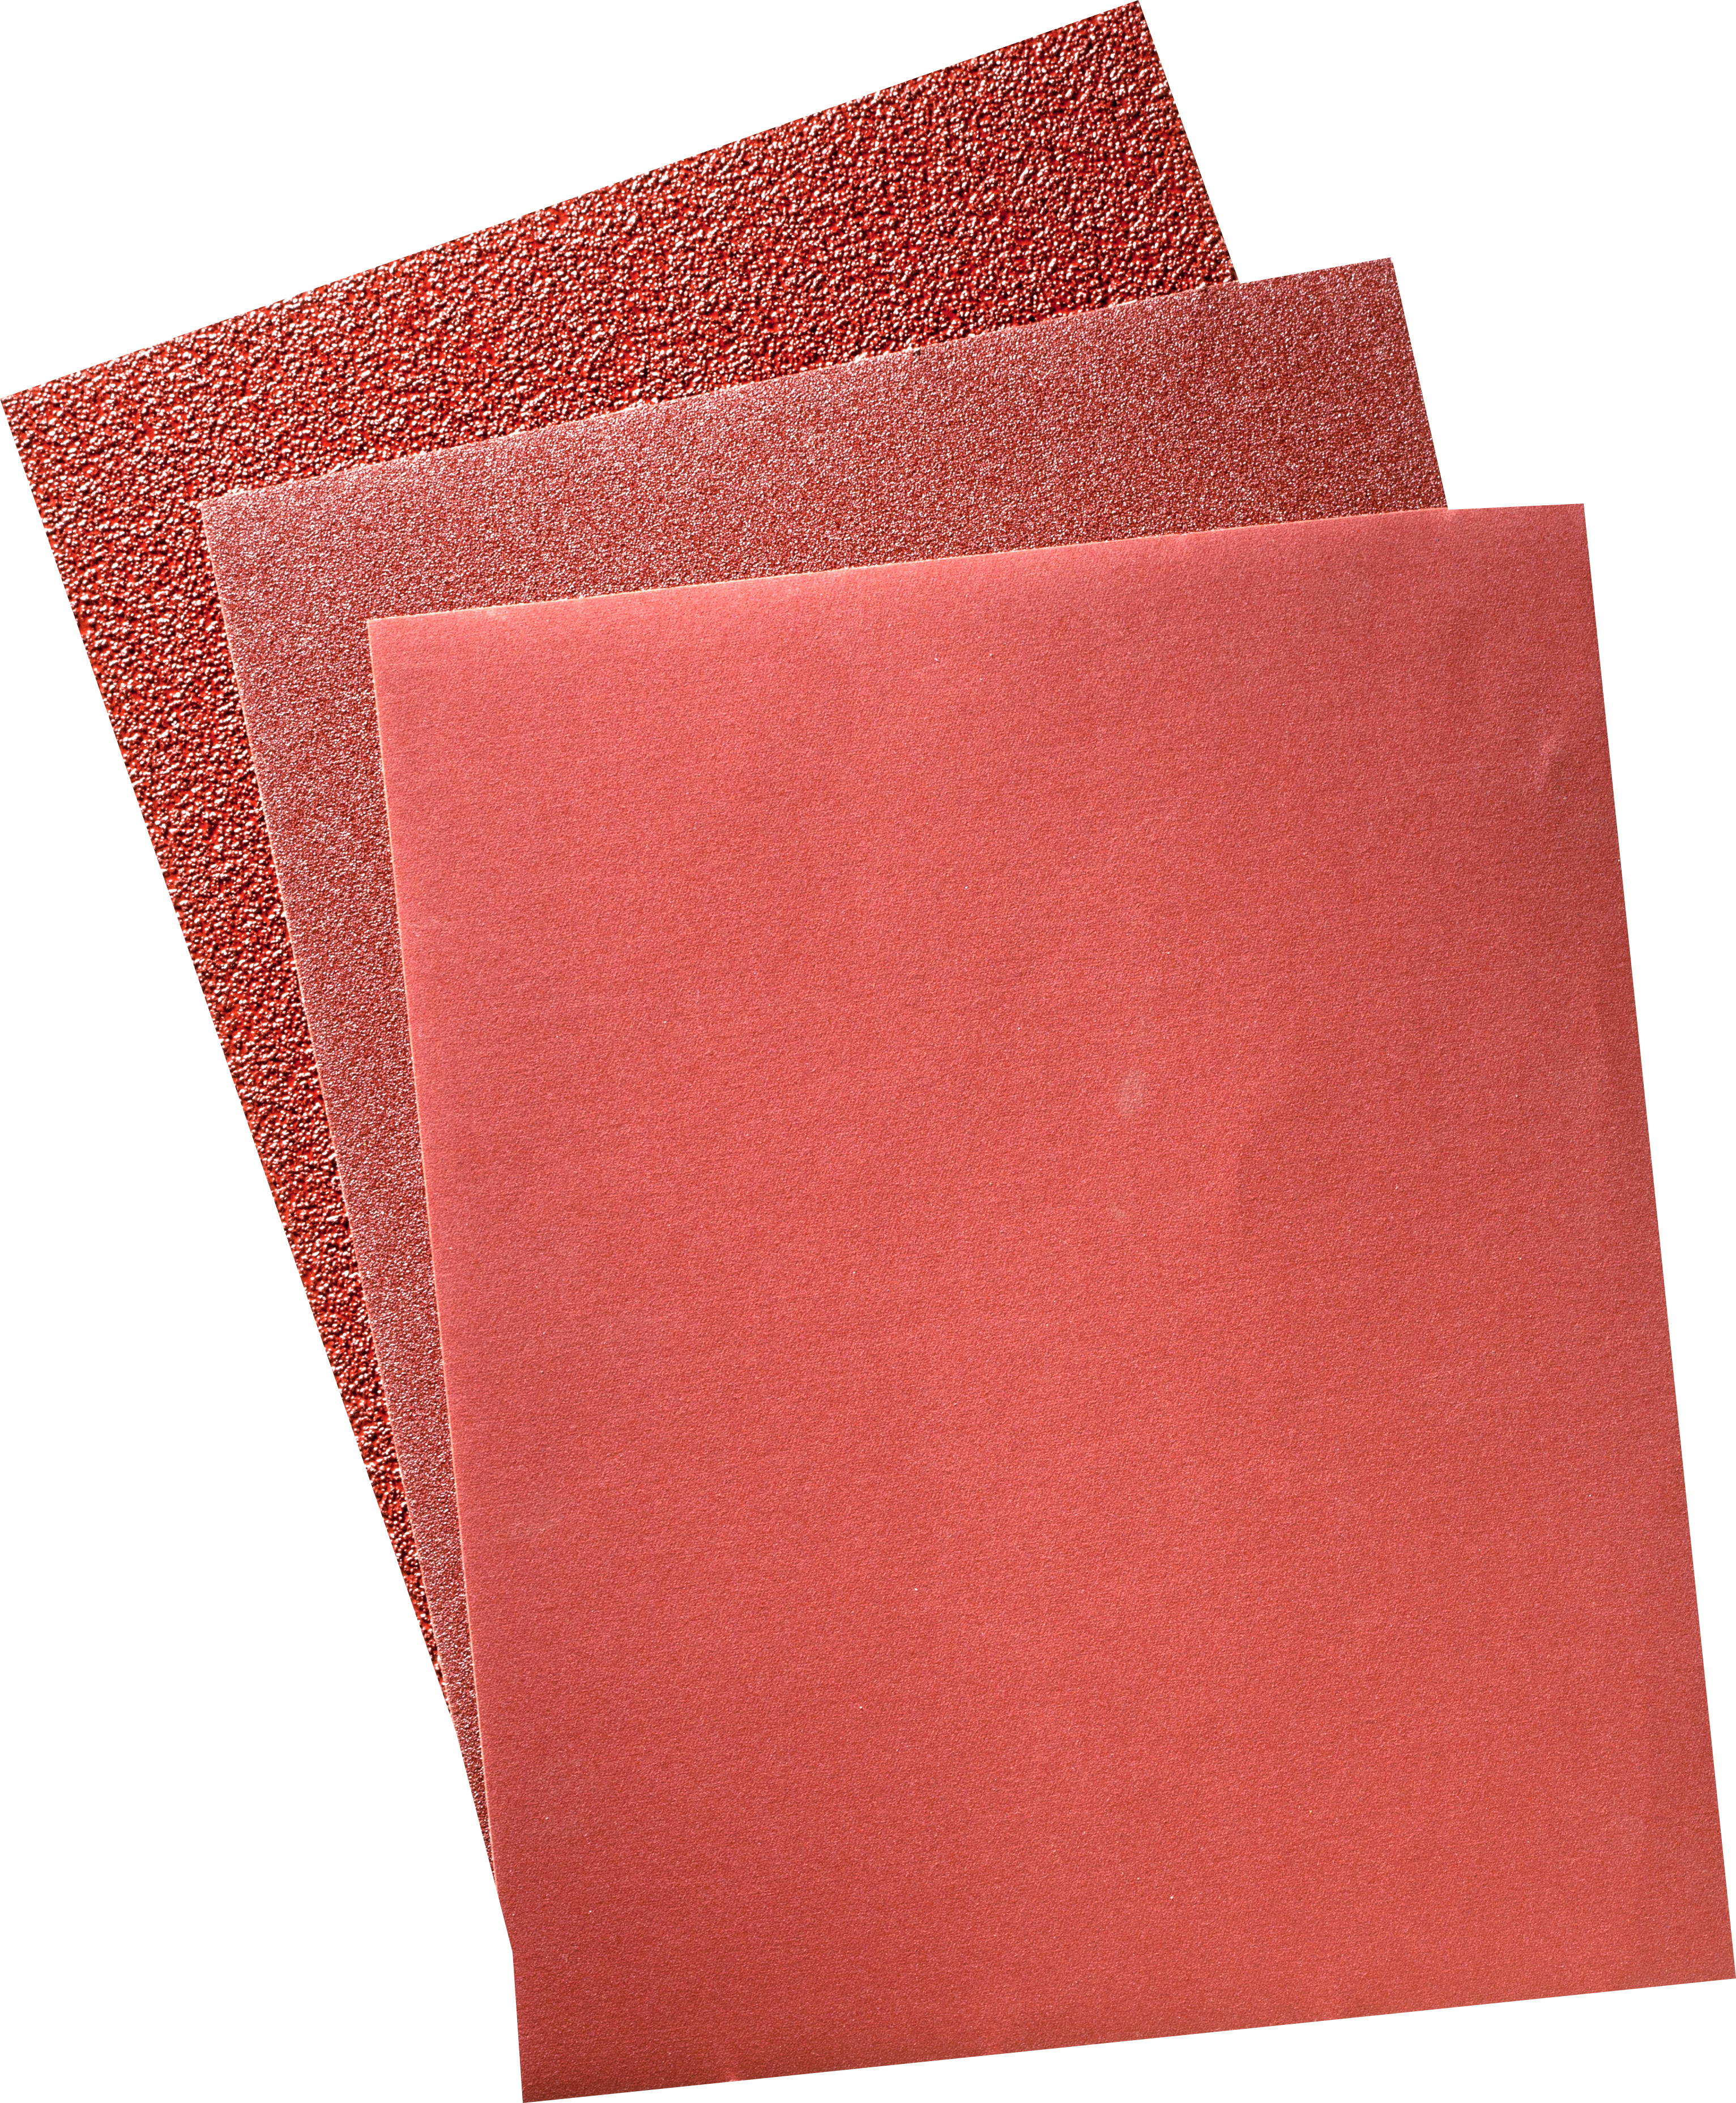 9 X 11 DAF 36X - Sandpaper Sheets